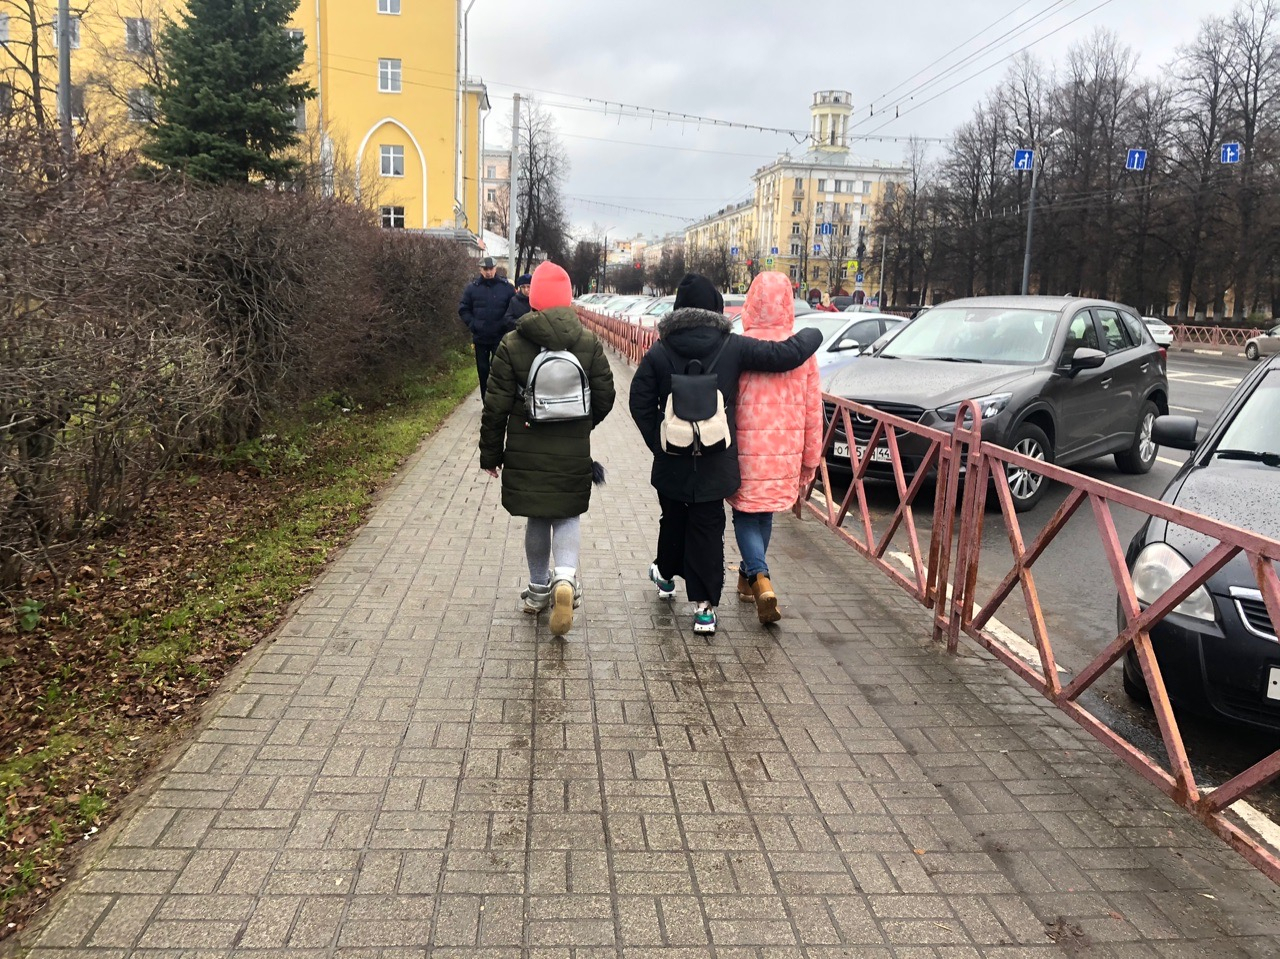 "Случайно проглотил и отравился": родители бьют тревогу из-за яда в школах Ярославля